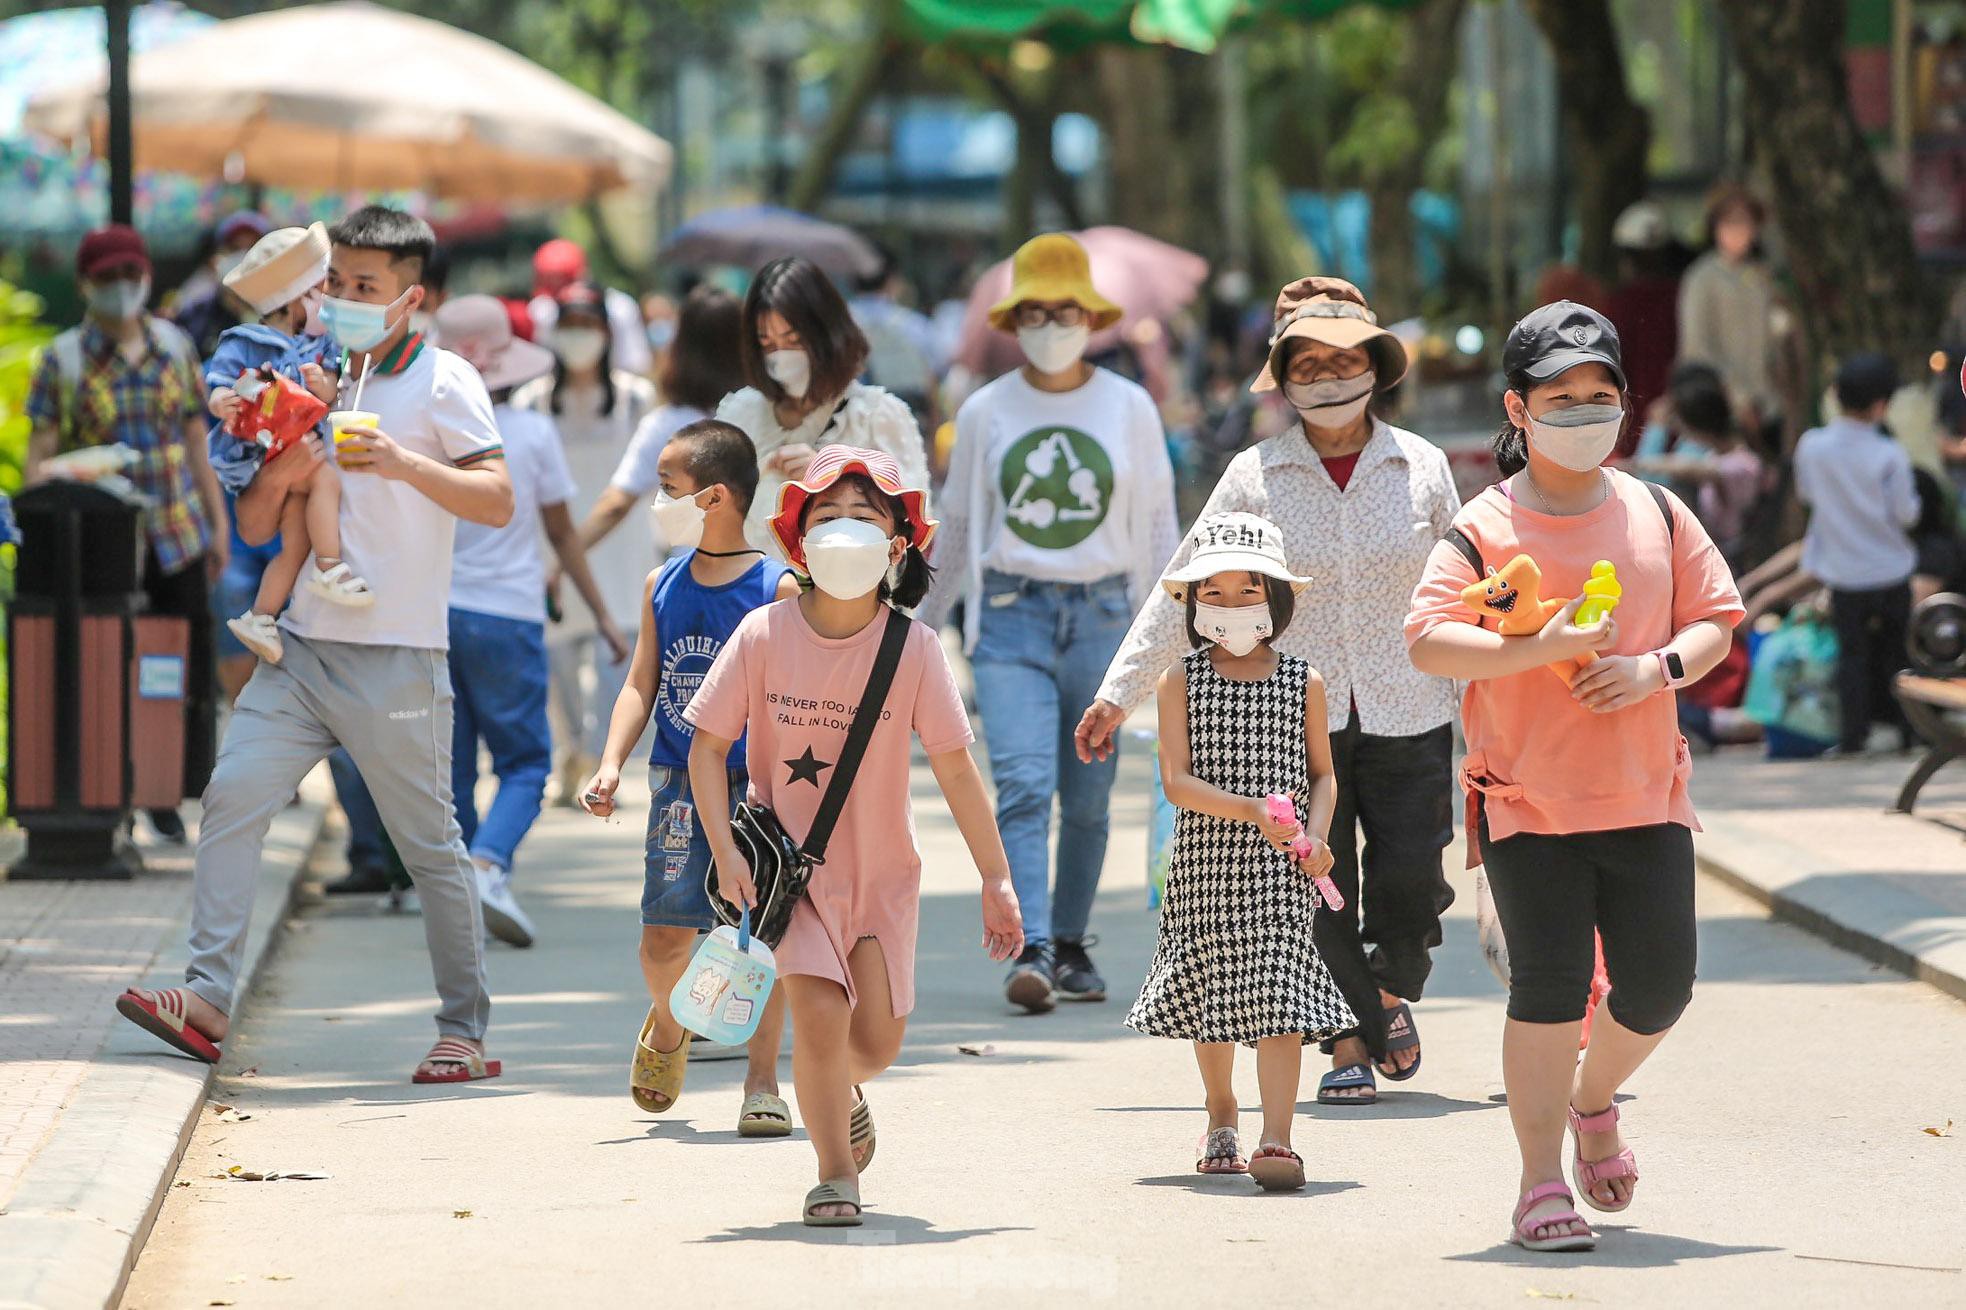 Ngàn người đổ về vườn thú Hà Nội trong ngày đầu nghỉ lễ - Ảnh 1.